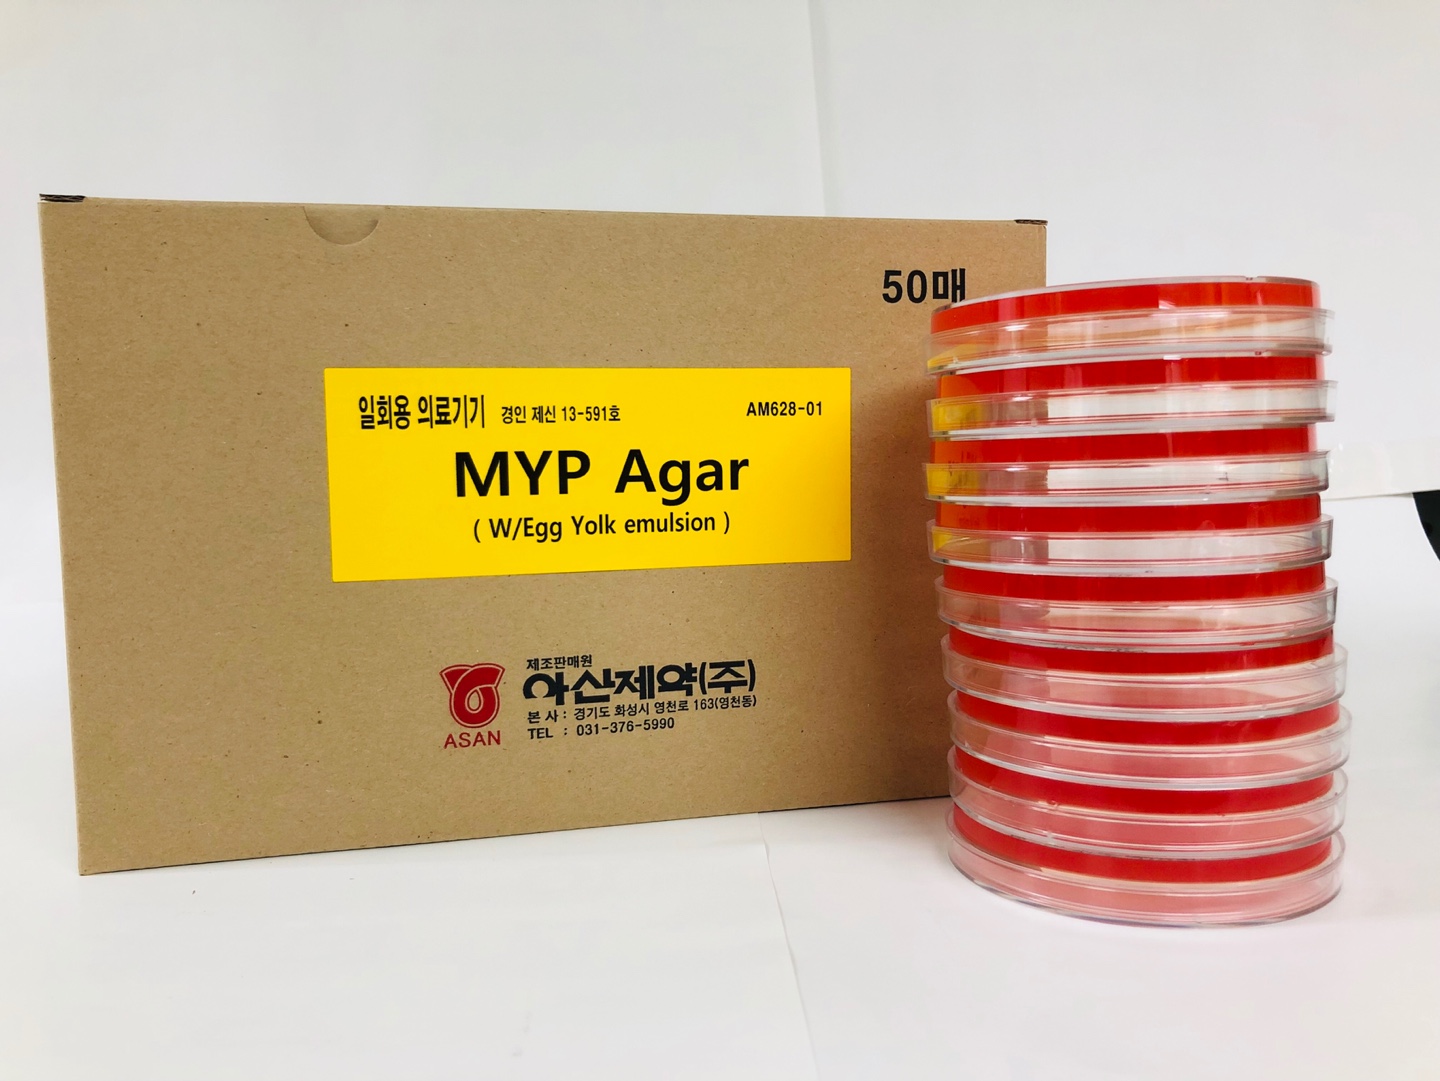 MYP ( Mannitol Egg Yolk Polymyxine ) agar